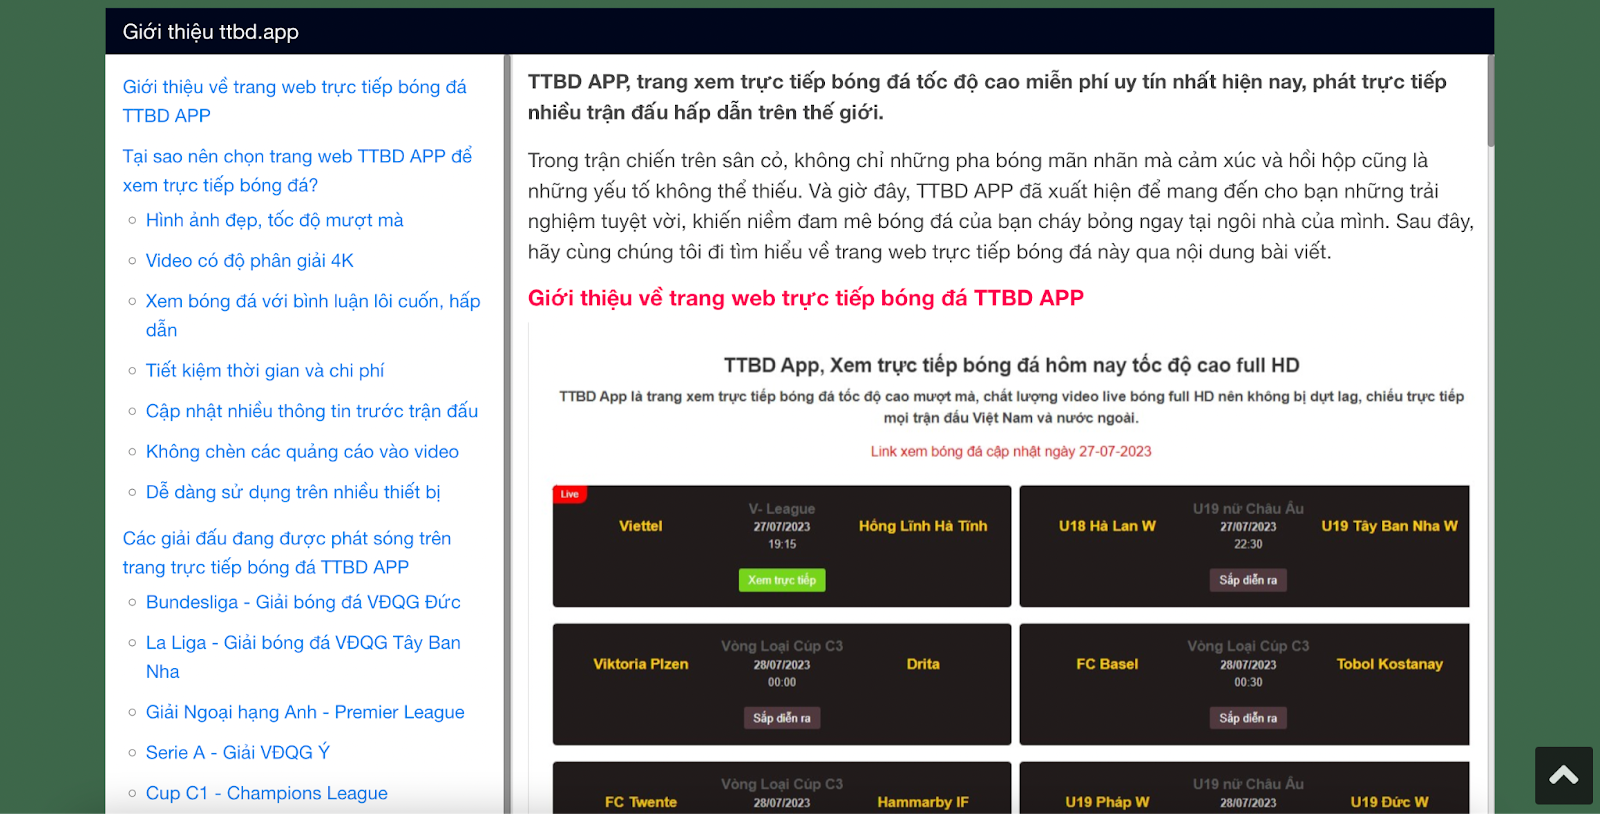 TTBD App hiện đang cung cấp đến người hâm mộ đa dạng tính năng, chuyên mục hấp dẫn.